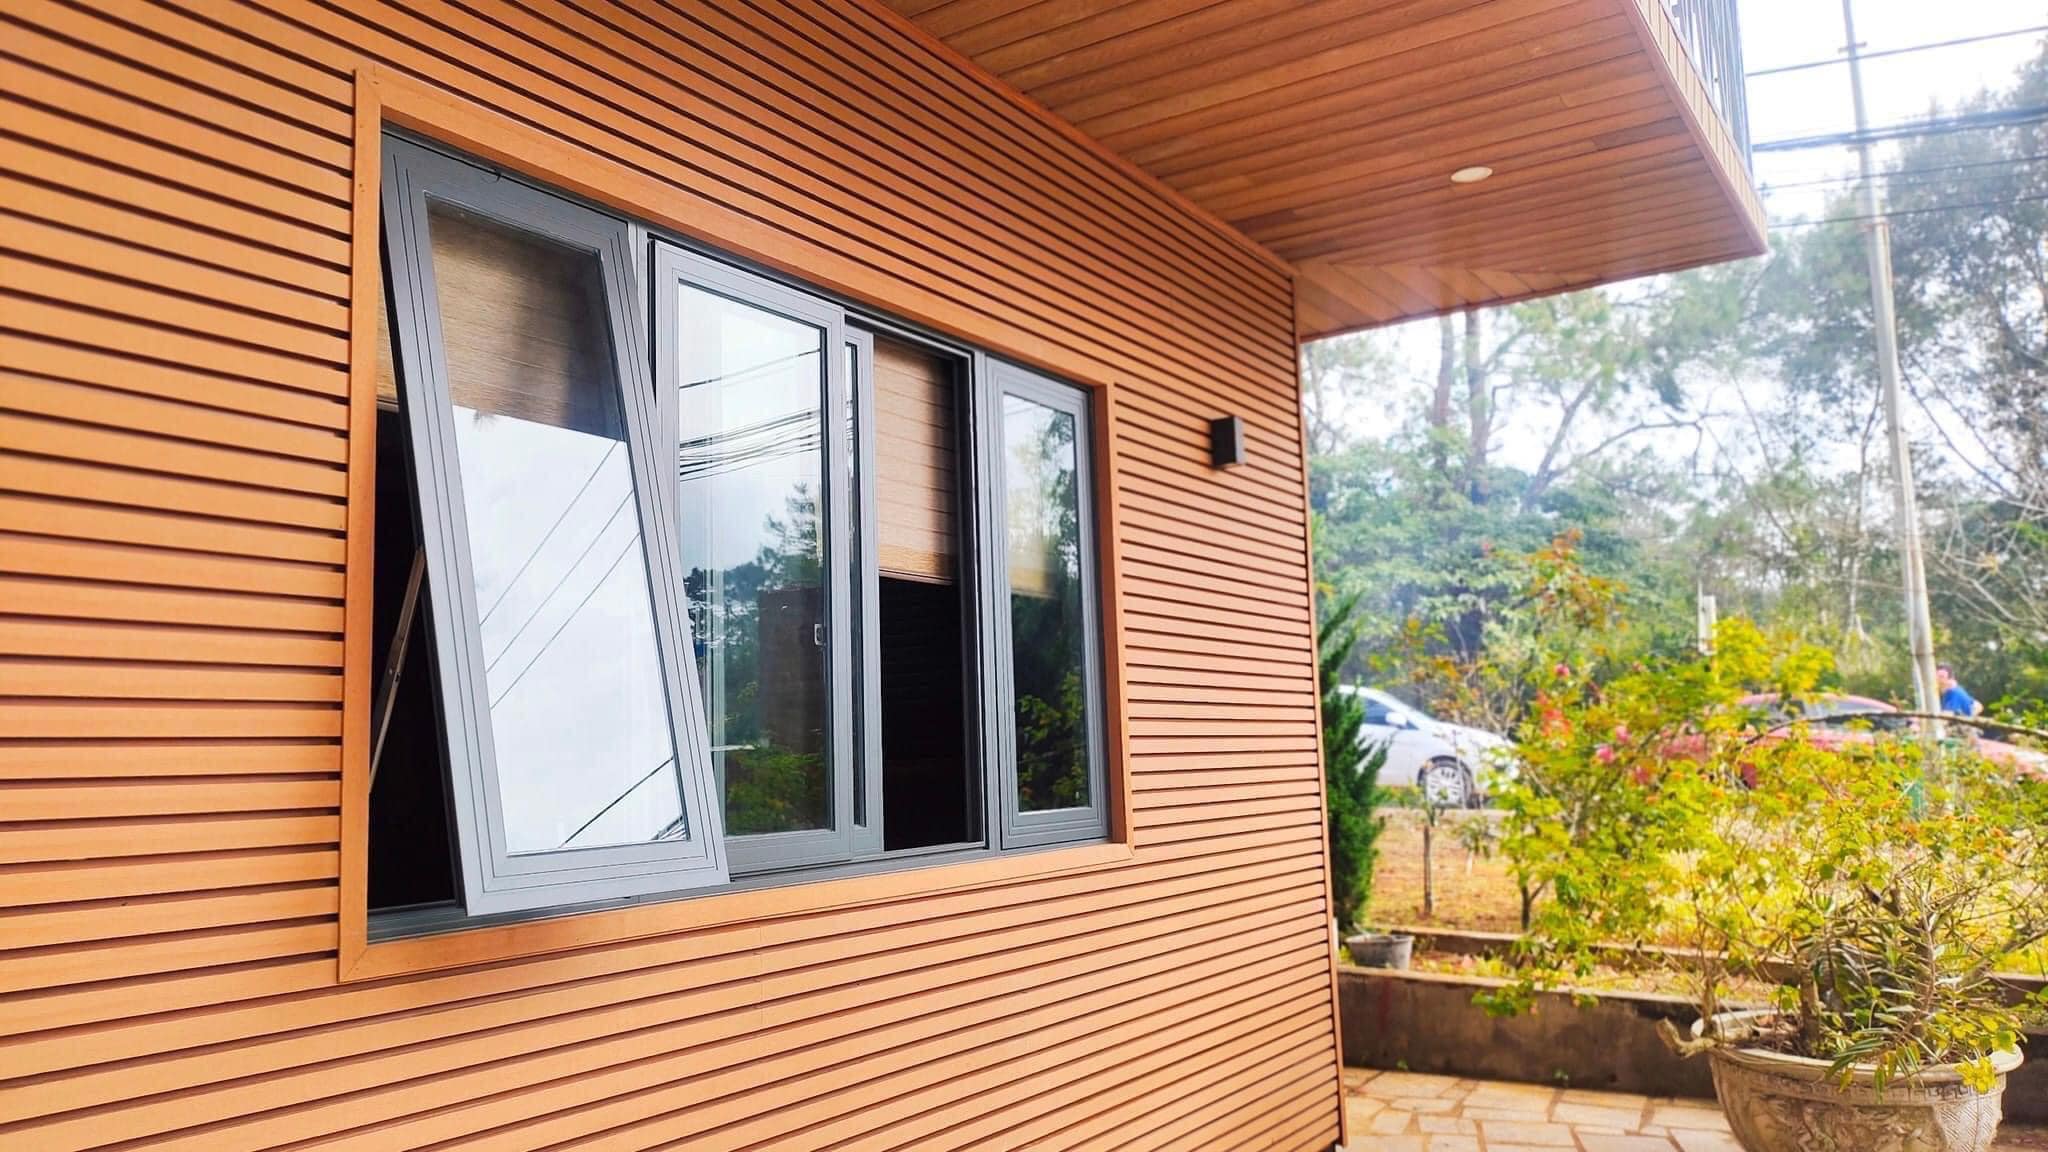 Tấm ốp gỗ nhựa ngoài trời là giải pháp bền vững cho không gian ngoại thất